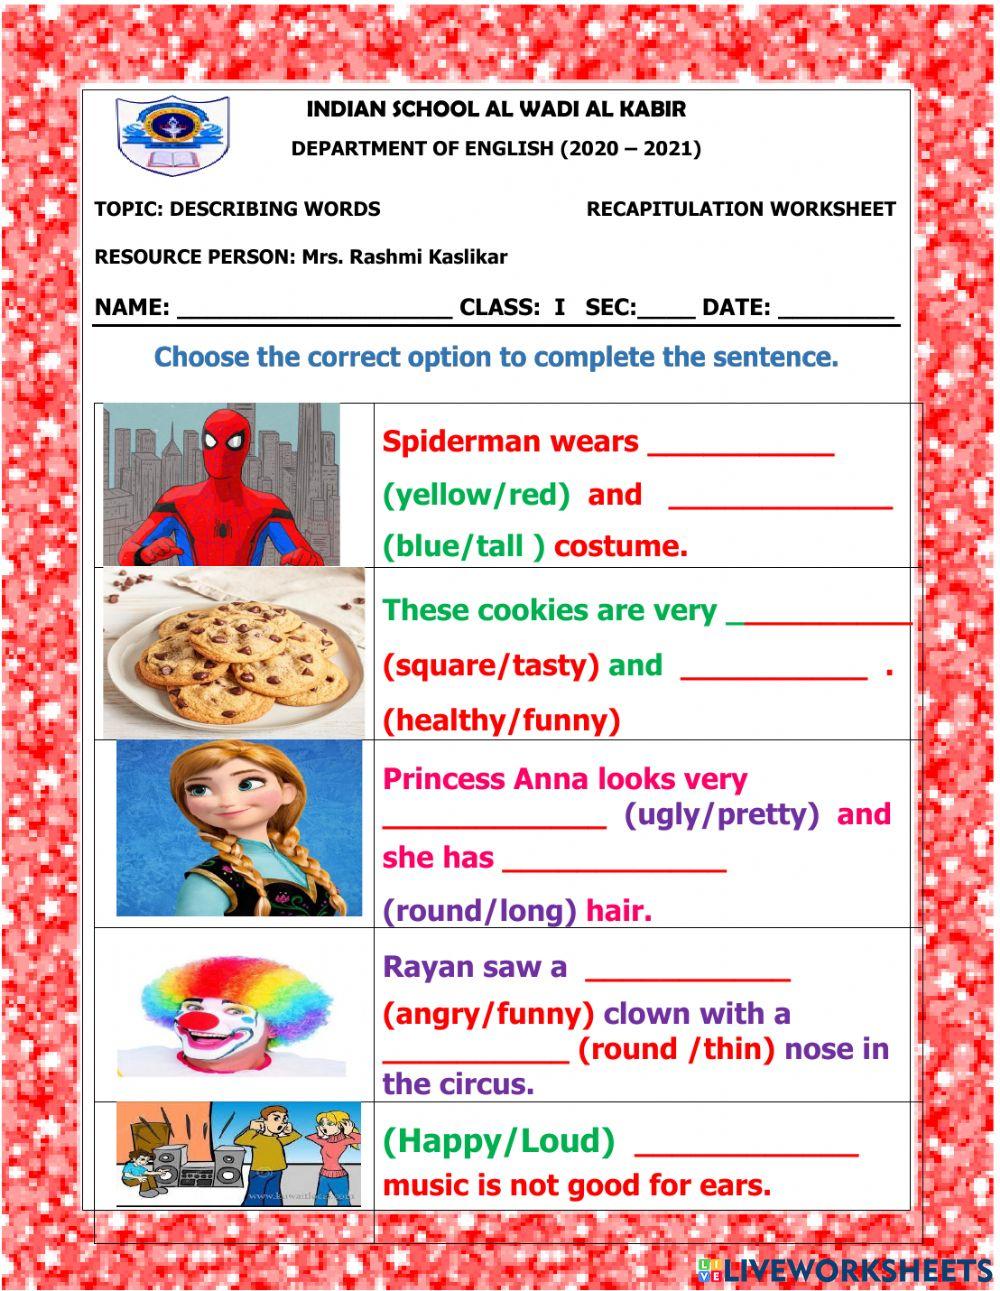 Recap worksheet- describing words